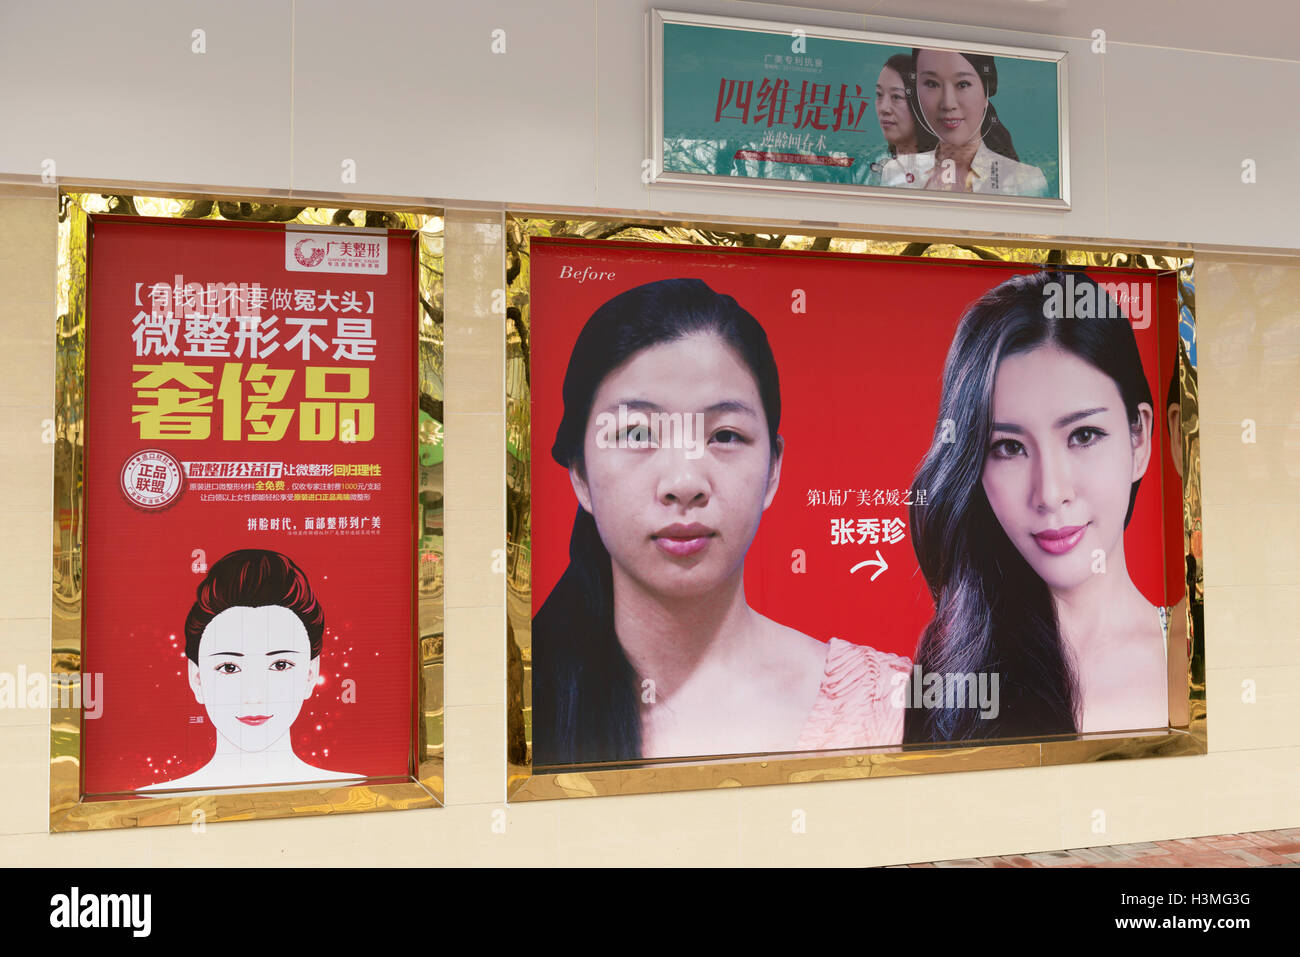 Chirurgia plastica pubblicità outdoor in Cina Foto Stock